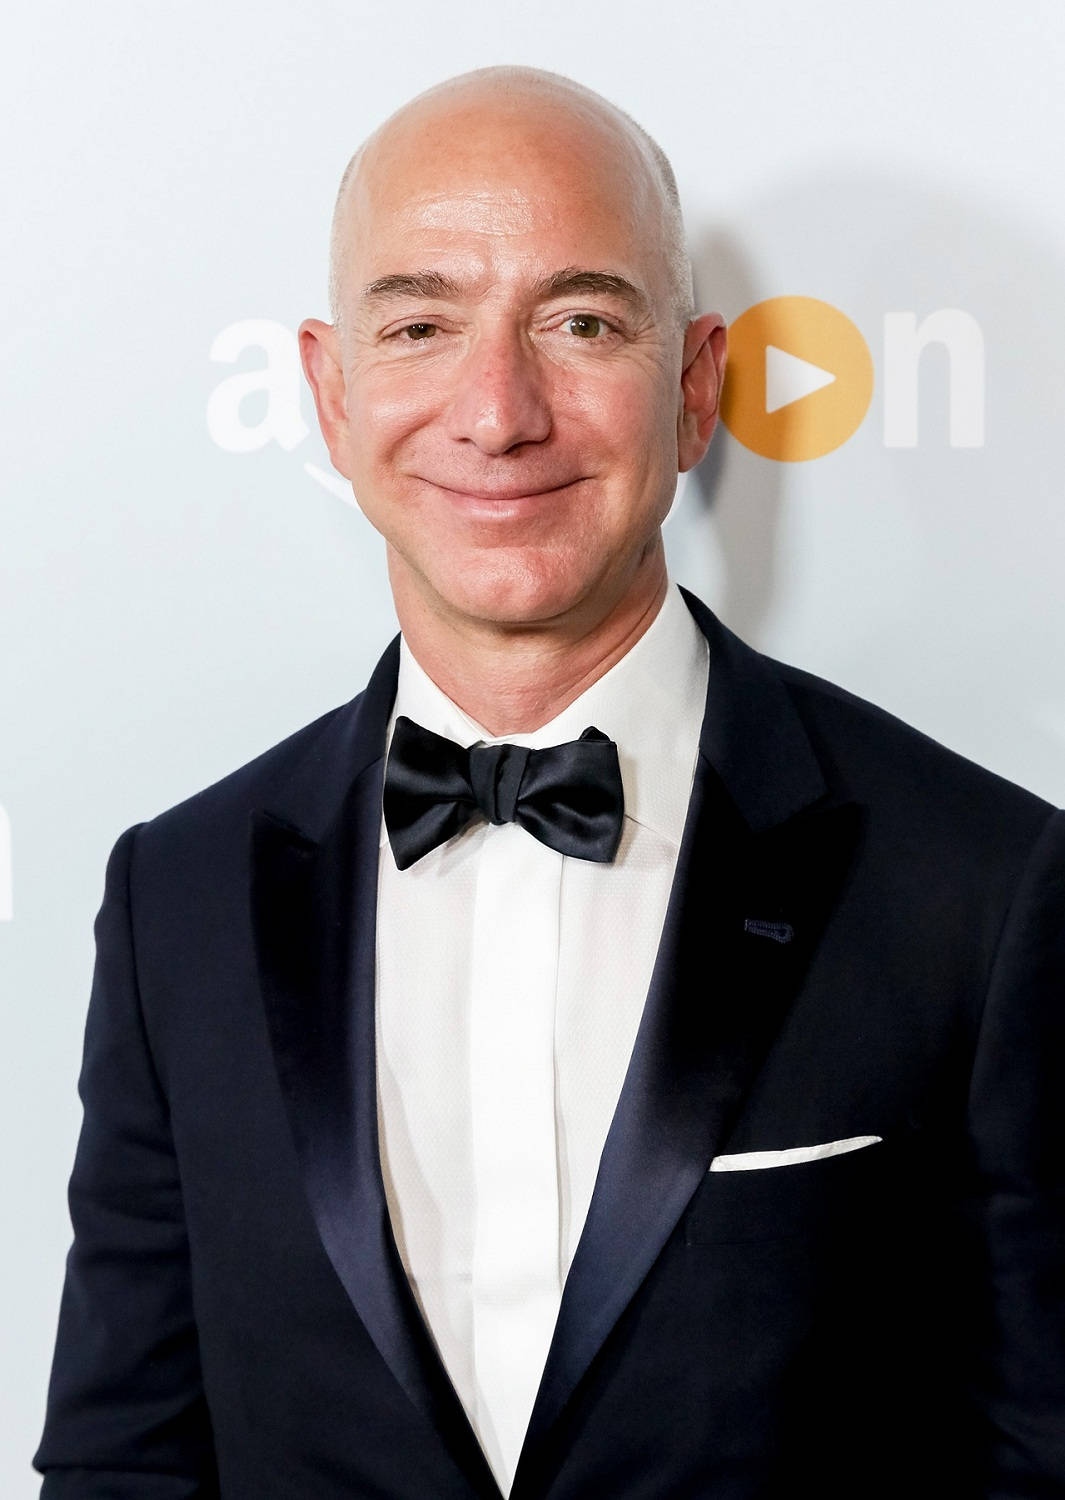 Fondode Pantalla De Jeff Bezos En Amazon. Fondo de pantalla